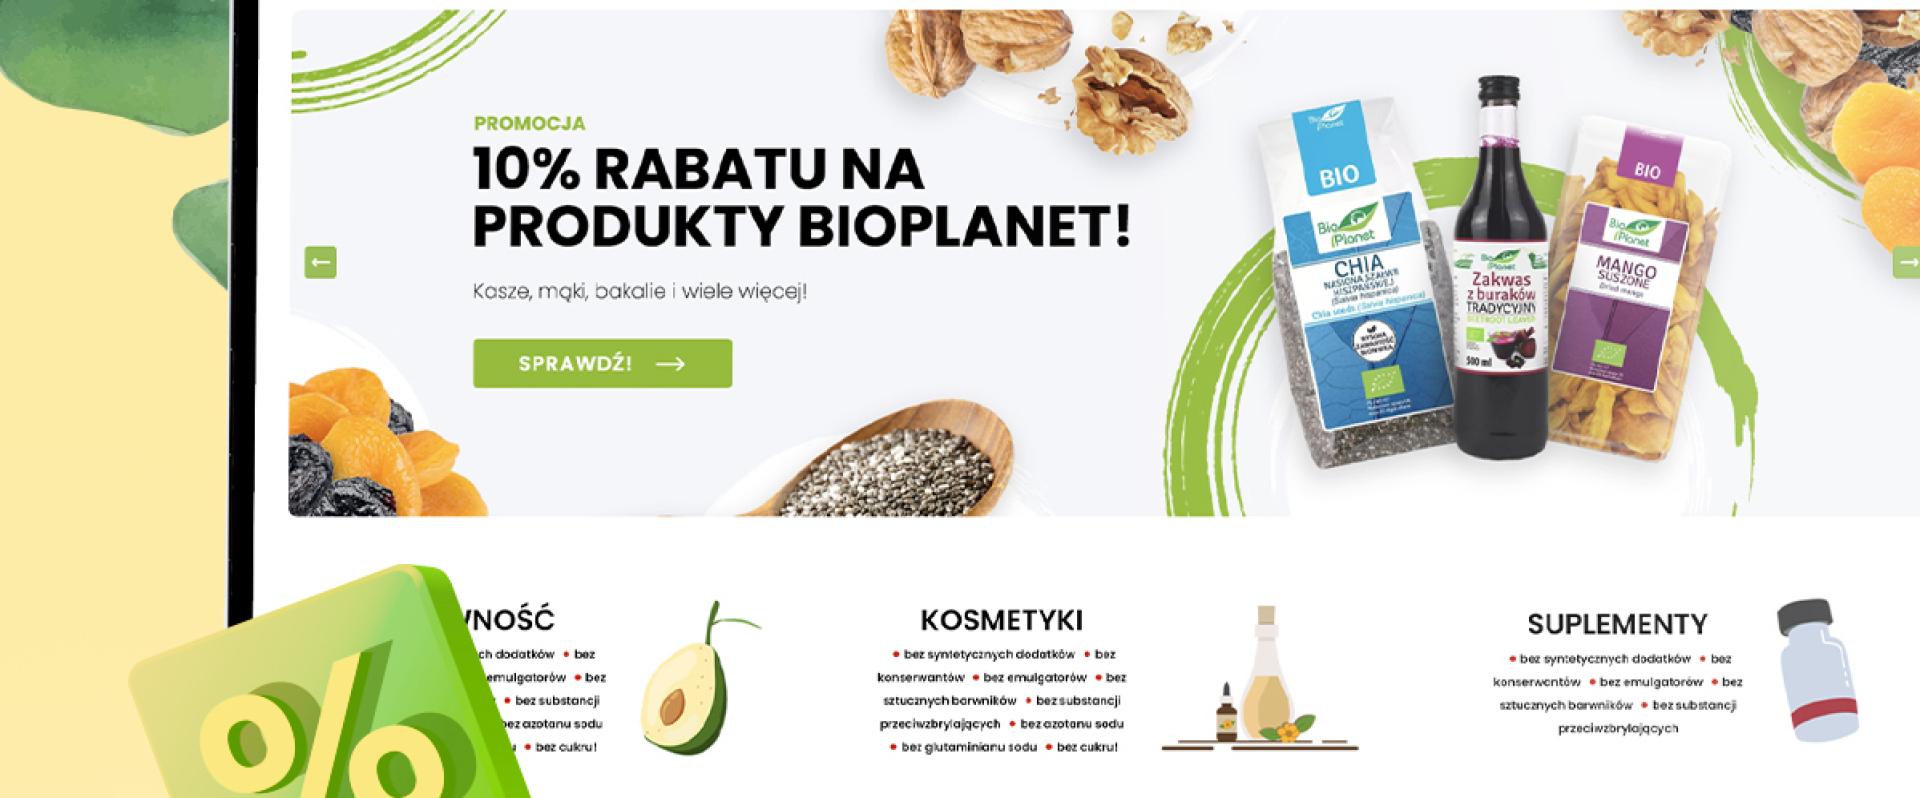 Biozdrowy.pl - wyselekcjonowana ekooferta i profesjonalne doradztwo